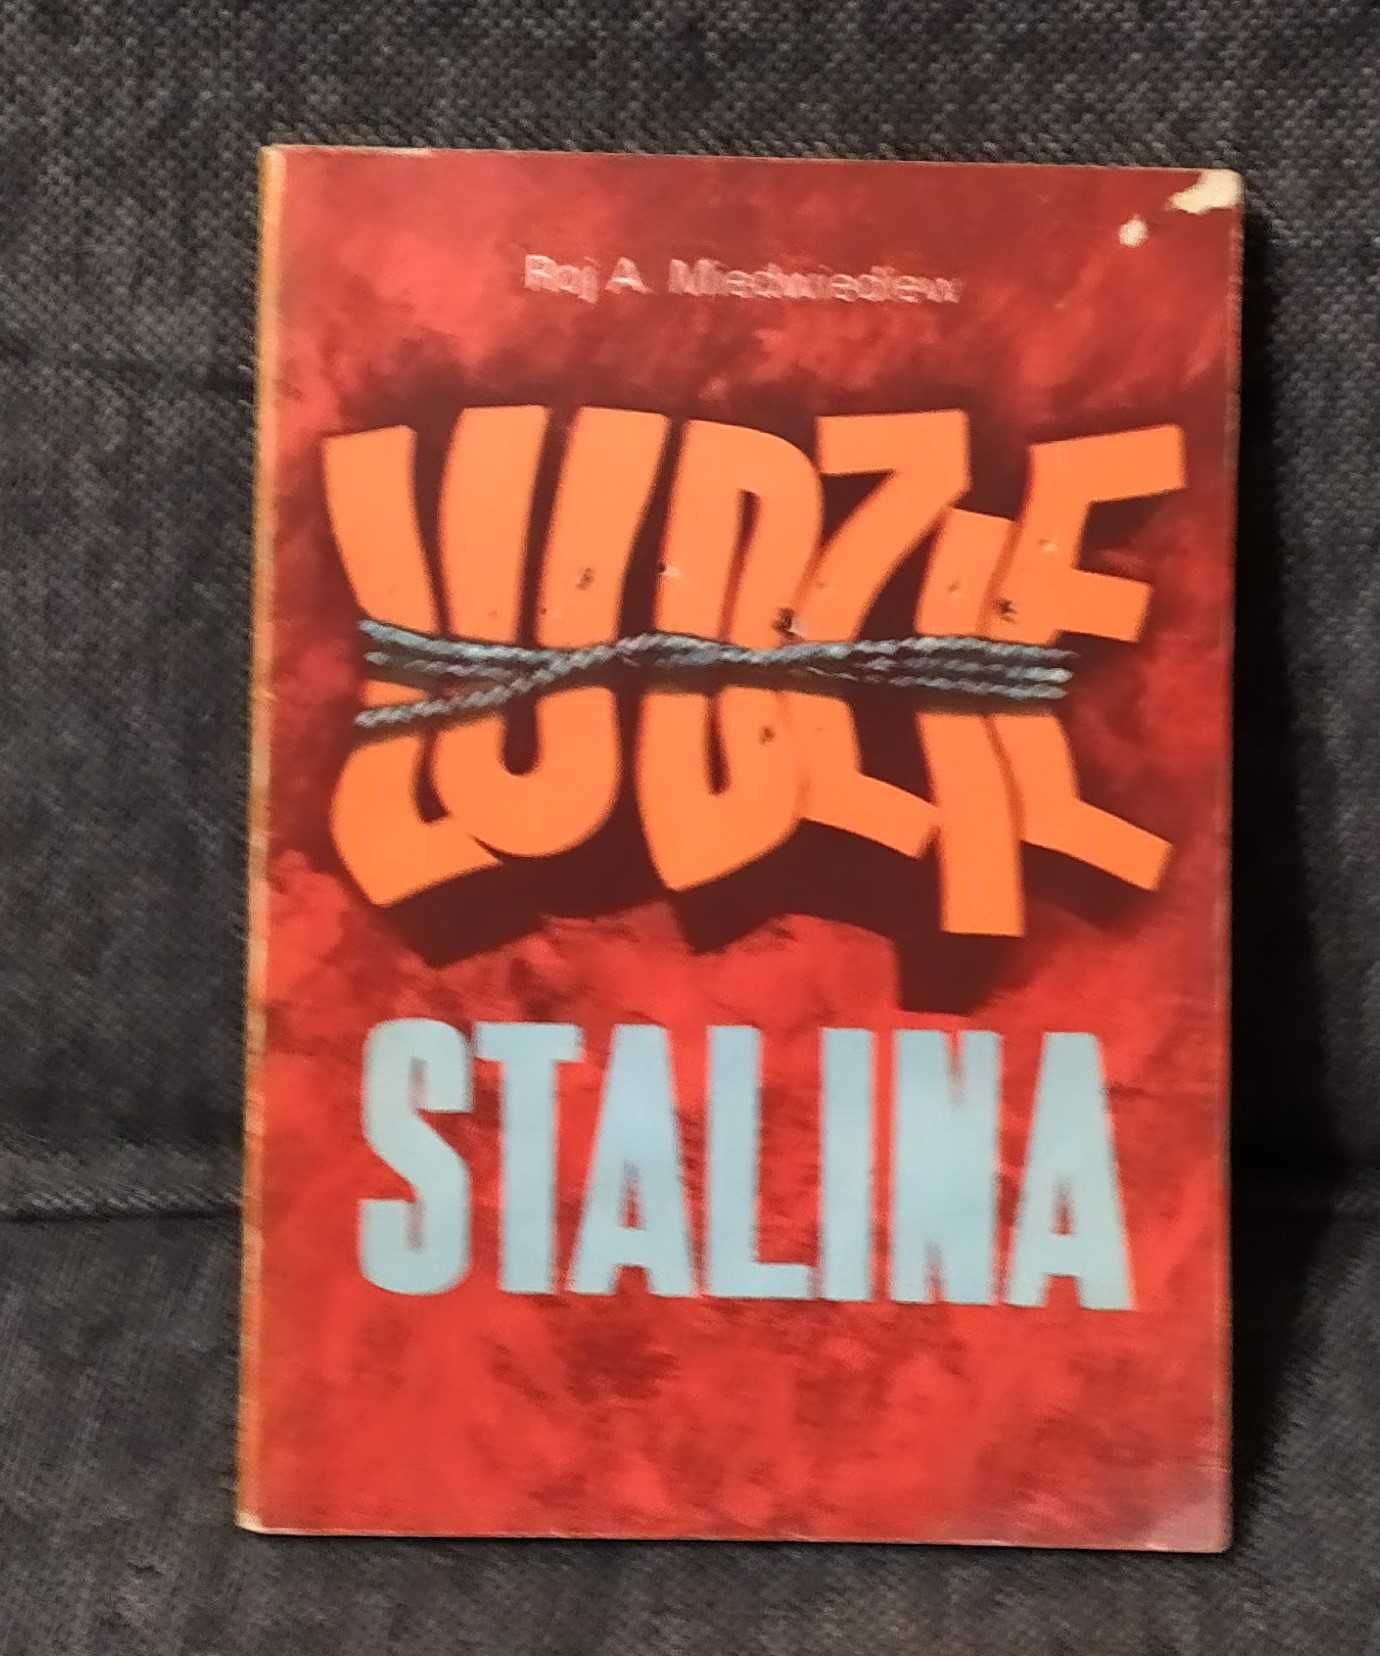 książka Ludzie Stalina
LUDZIE STALINA
AUTOR : A. Miedwiediew